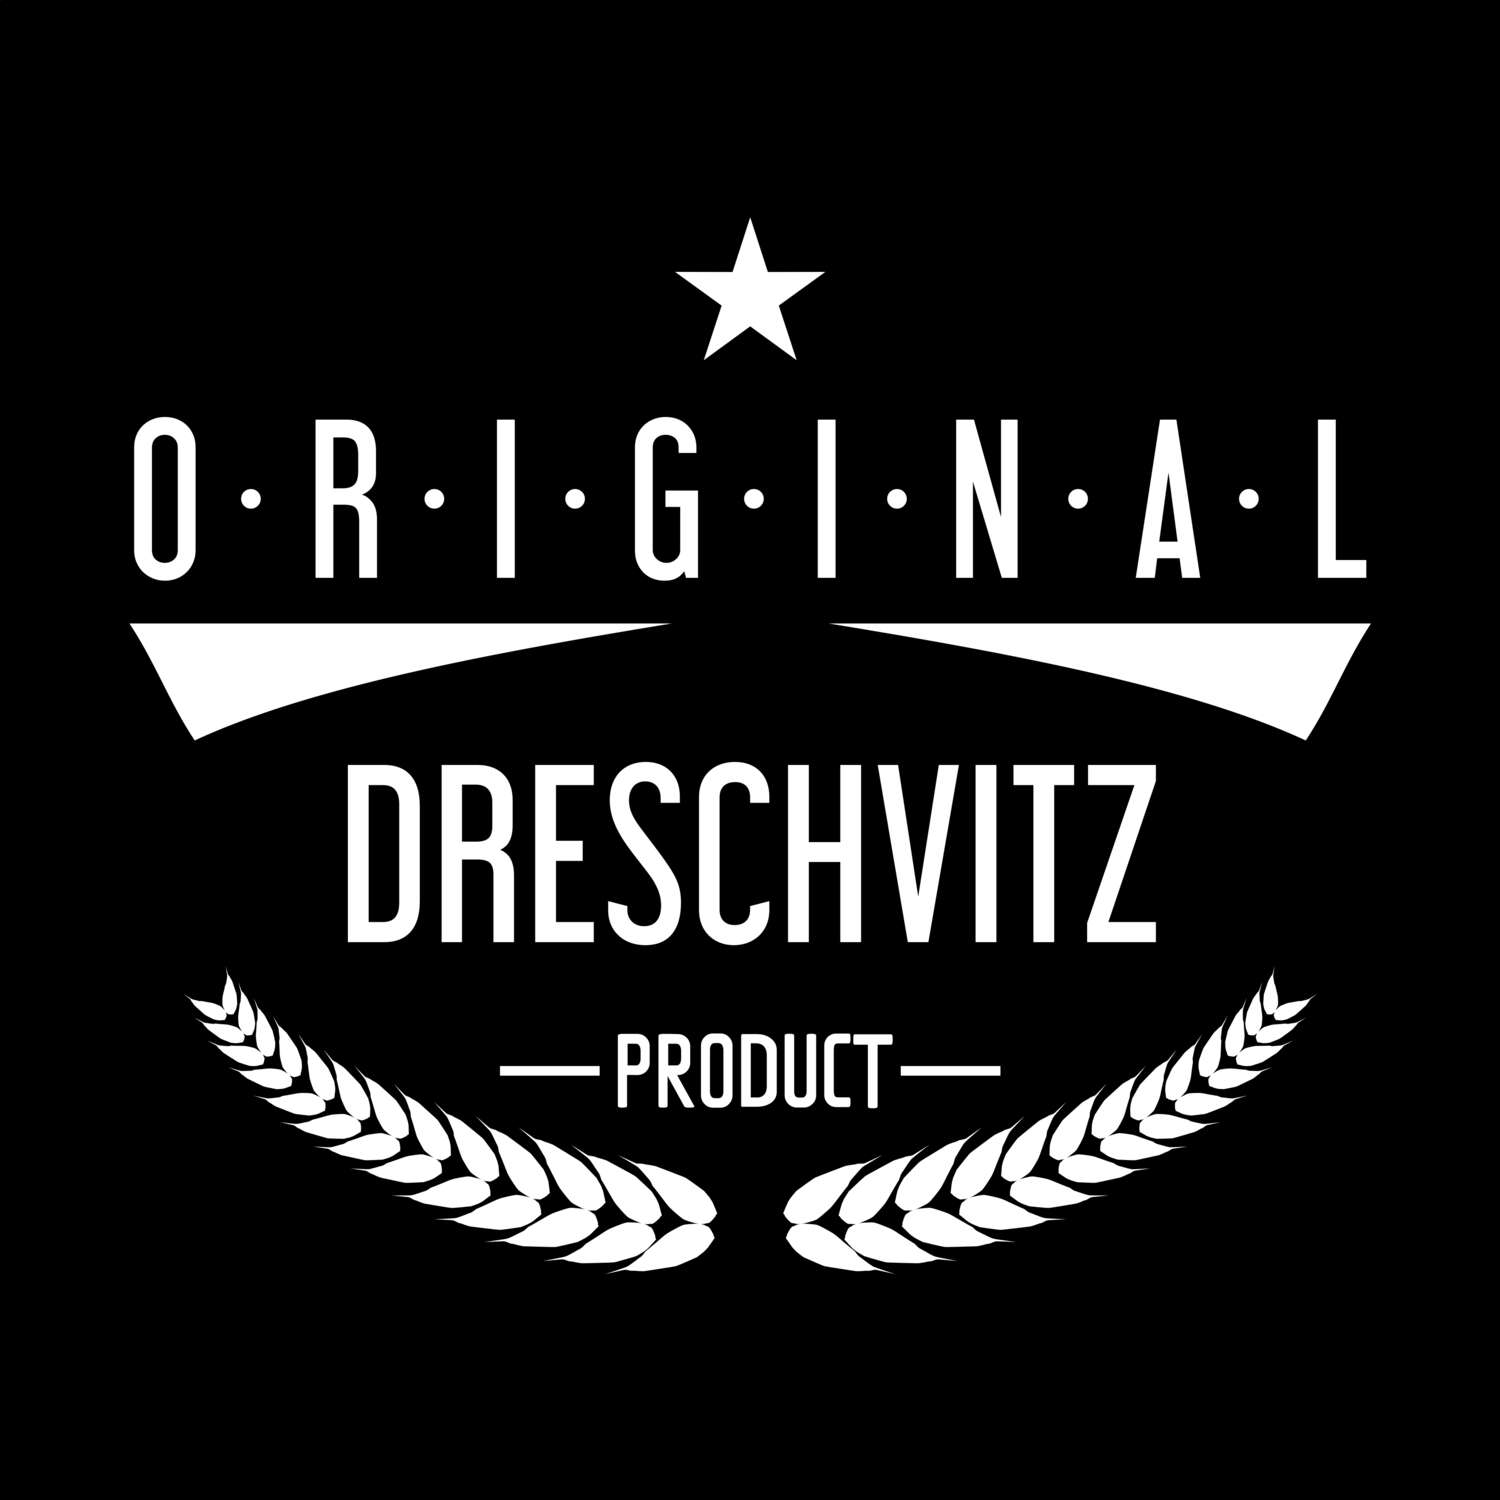 Dreschvitz T-Shirt »Original Product«